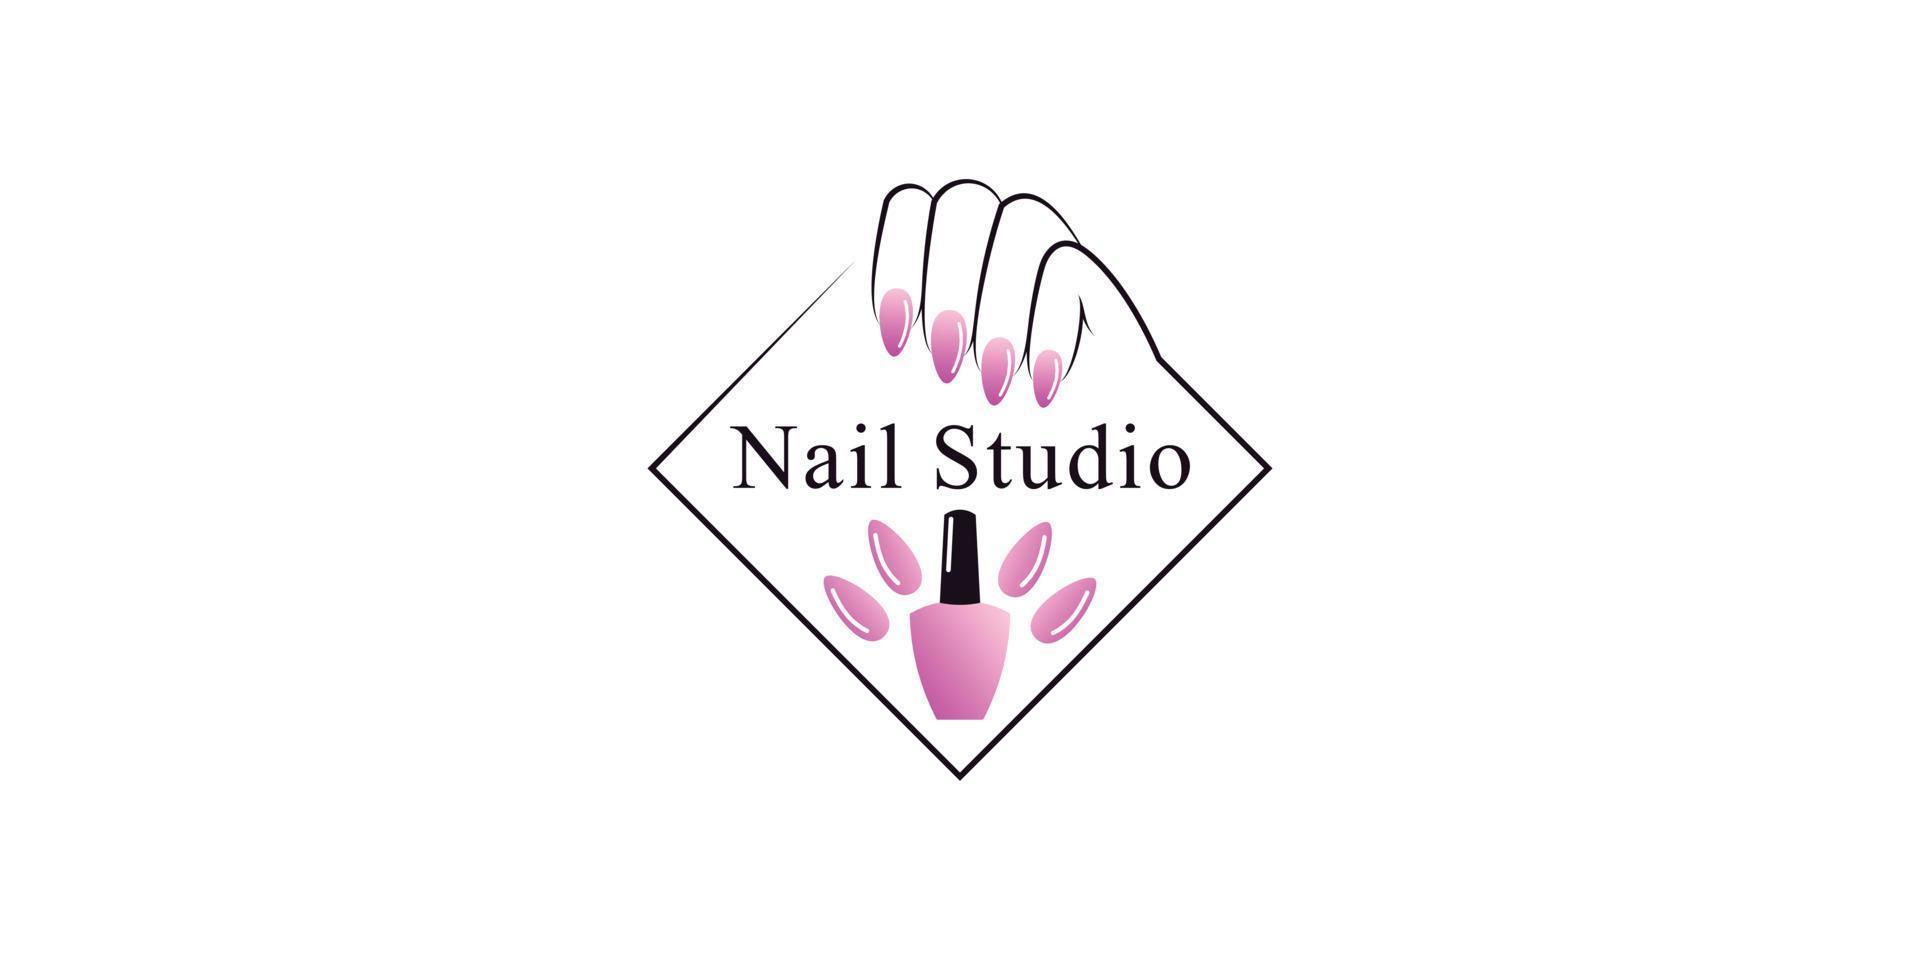 nagel putsa eller nagel studio logotyp design med kreativ element och unik begrepp premie vektor